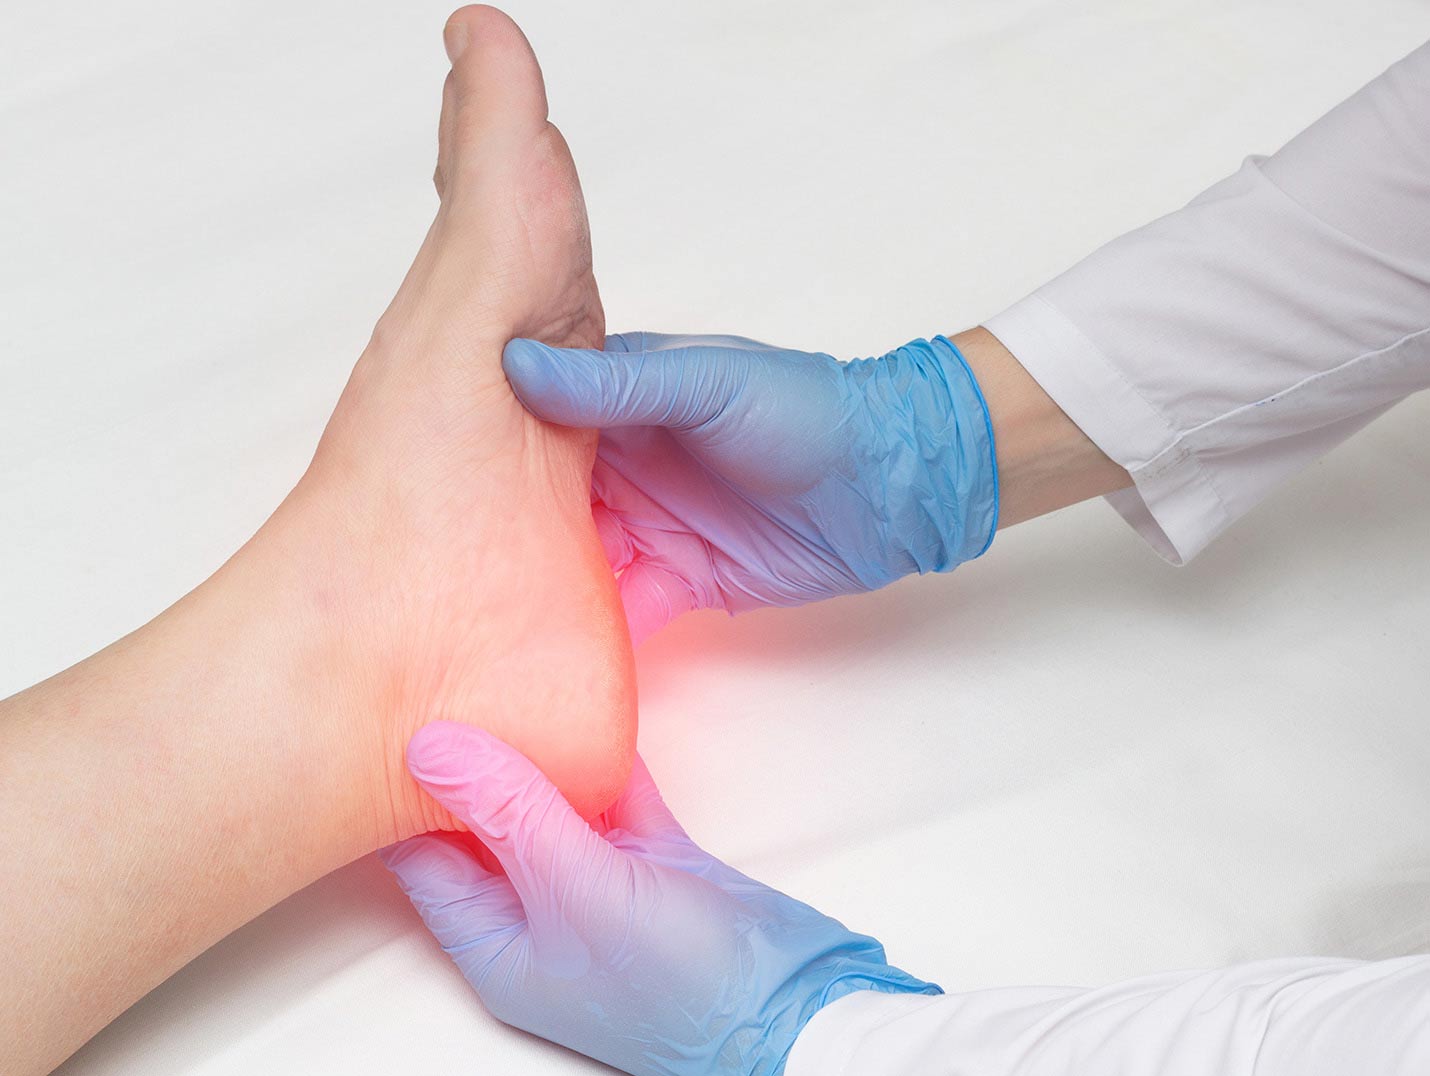 Manos de un médico con guantes azules, sosteniendo el pie de un paciente. La zona del talón tiene una luz roja, indicando dolor